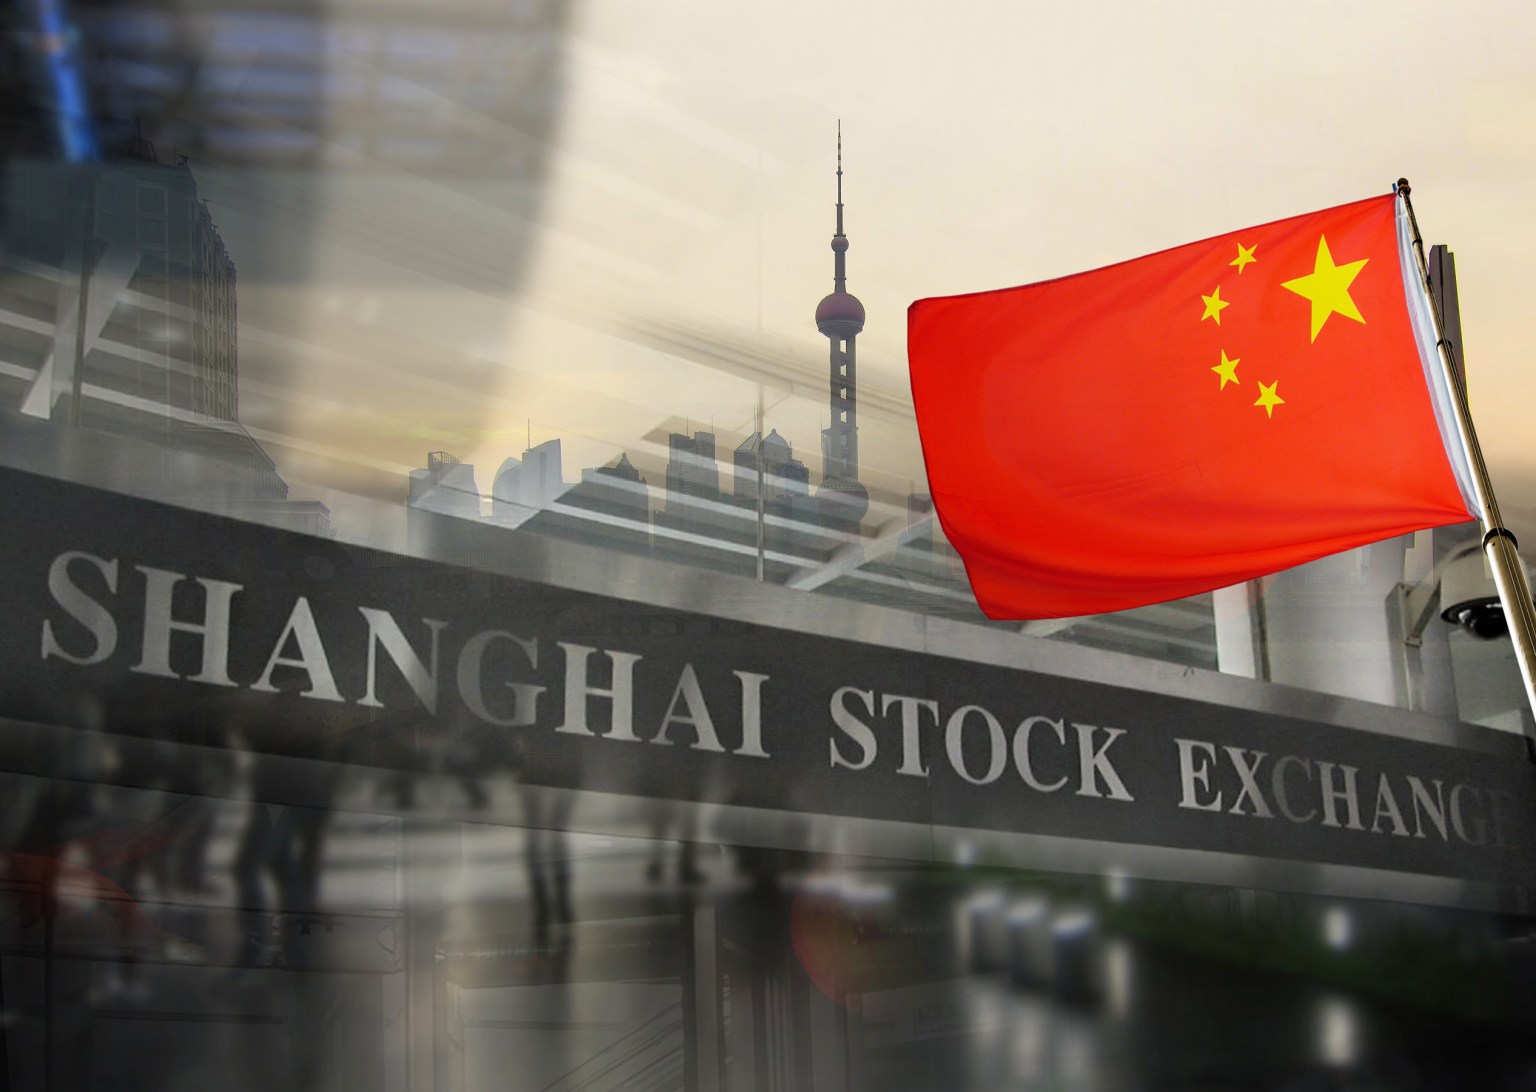 Shanghai’s stock exchange